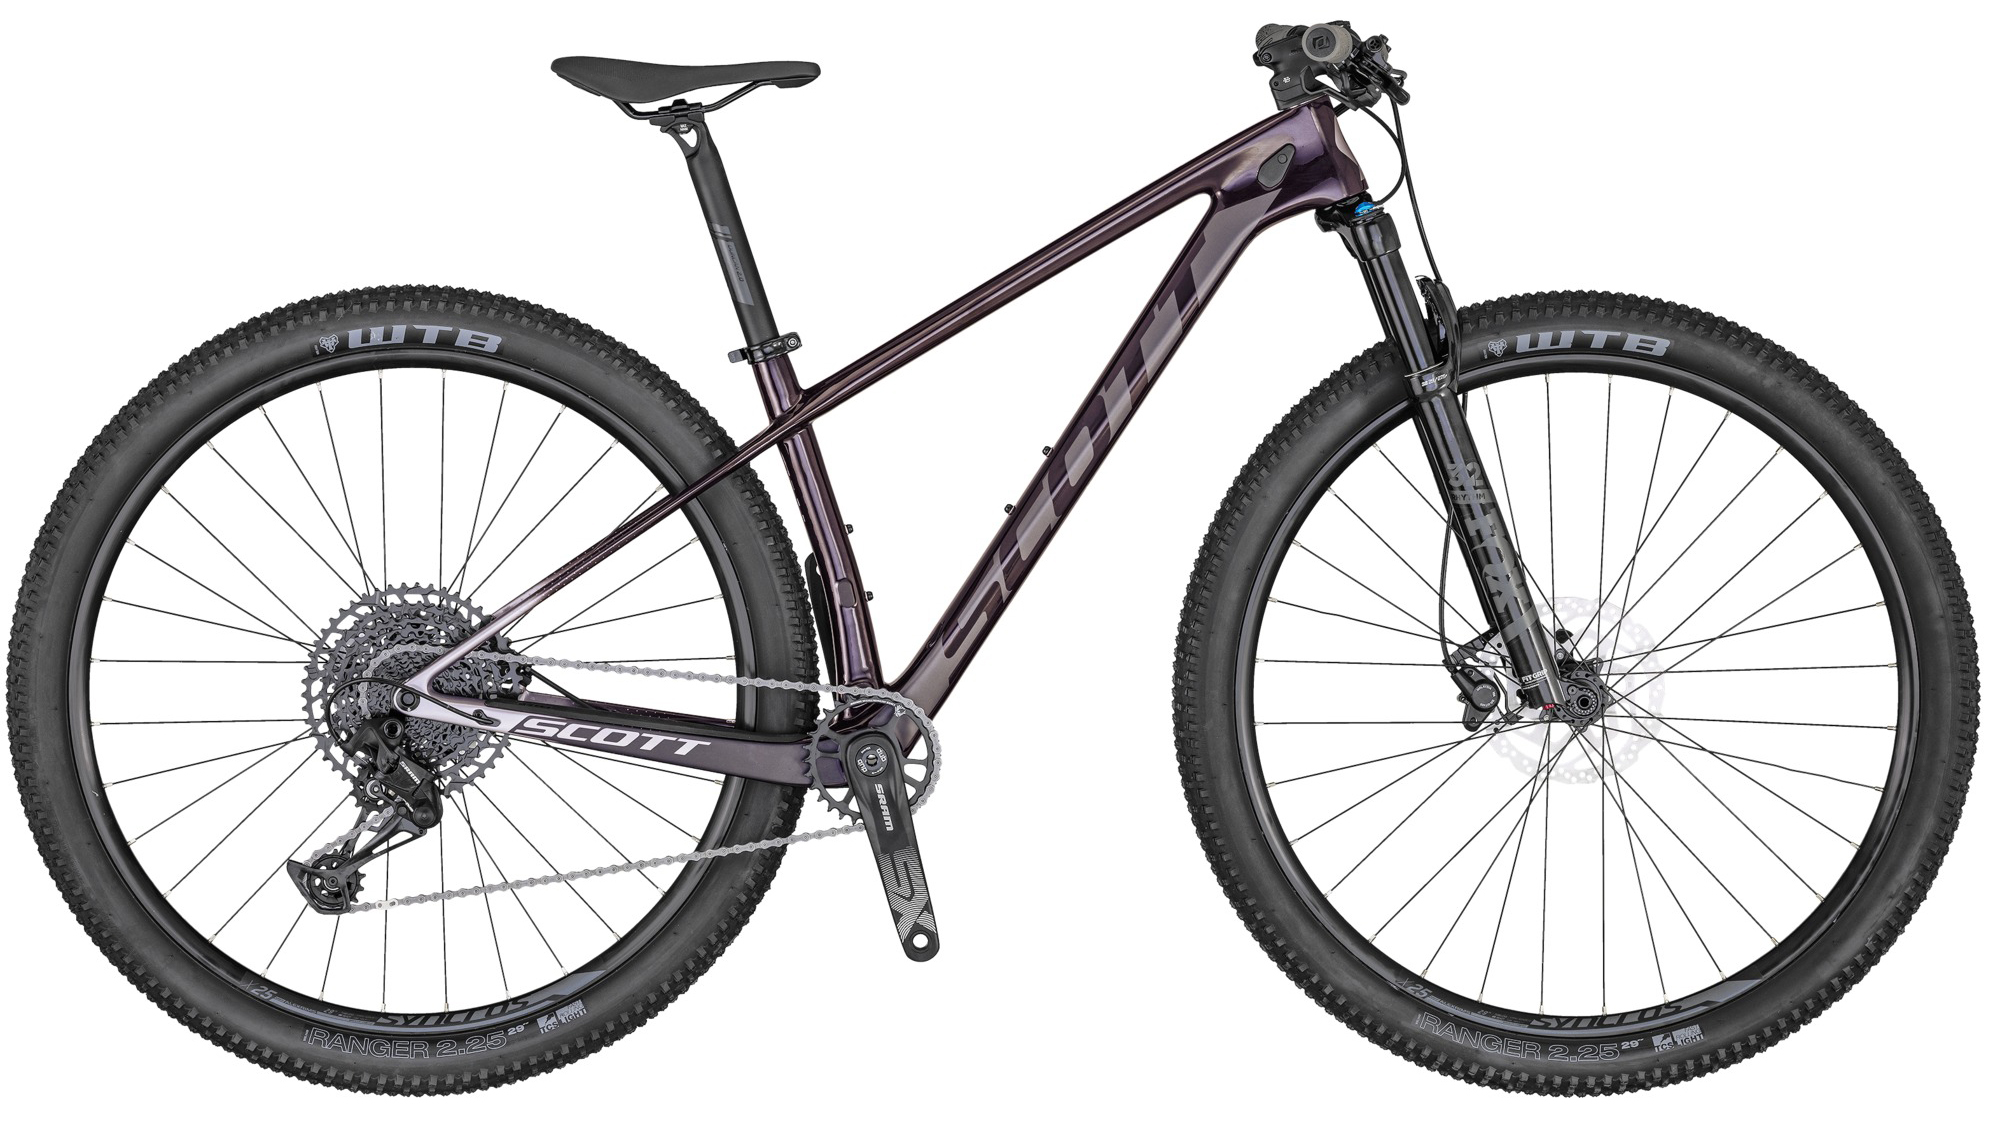  Отзывы о Горном велосипеде Scott Contessa Scale 920 2022